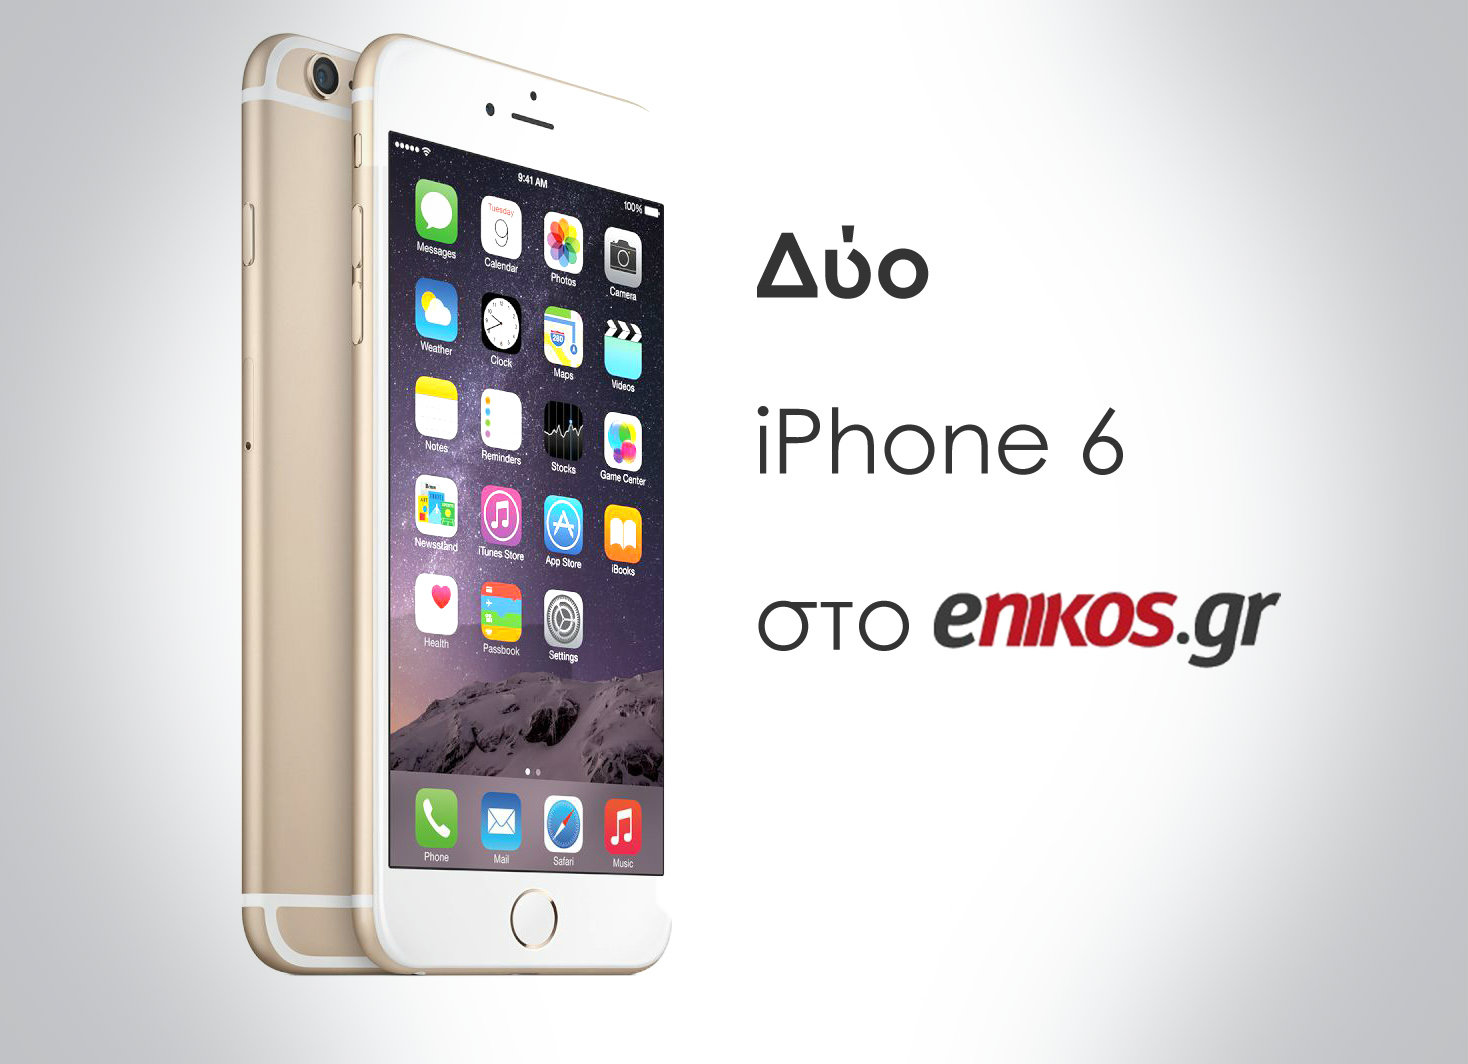 Σε λίγες ώρες οι 2 νικητές των iPhone από το enikos.gr